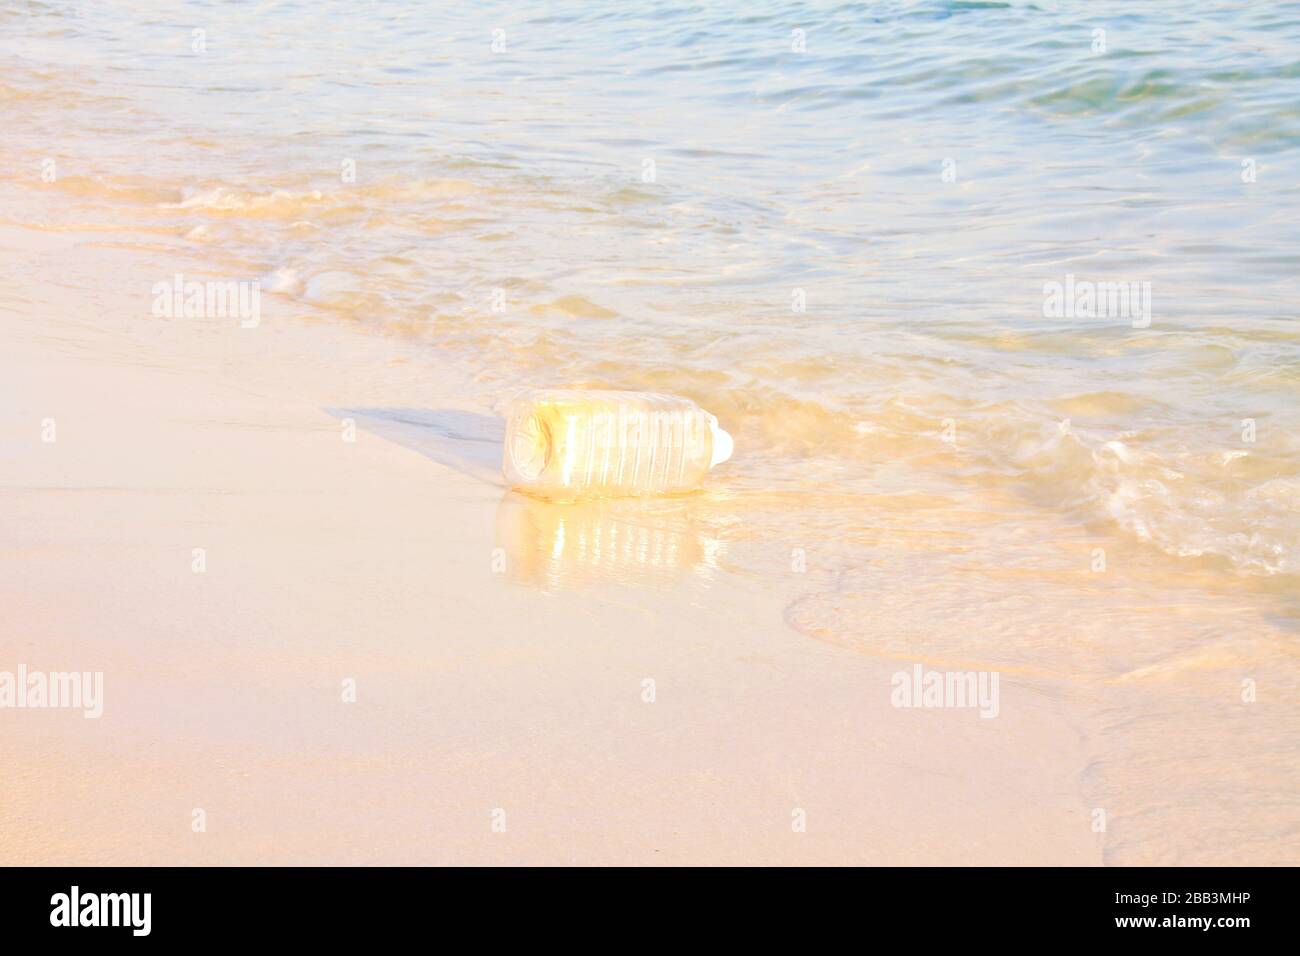 Müll an der Küste von Koh rong Island Soksan Beach in Kambodscha, der Meeresverschmutzung, Umweltschäden und menschliche Abfälle zeigt Stockfoto